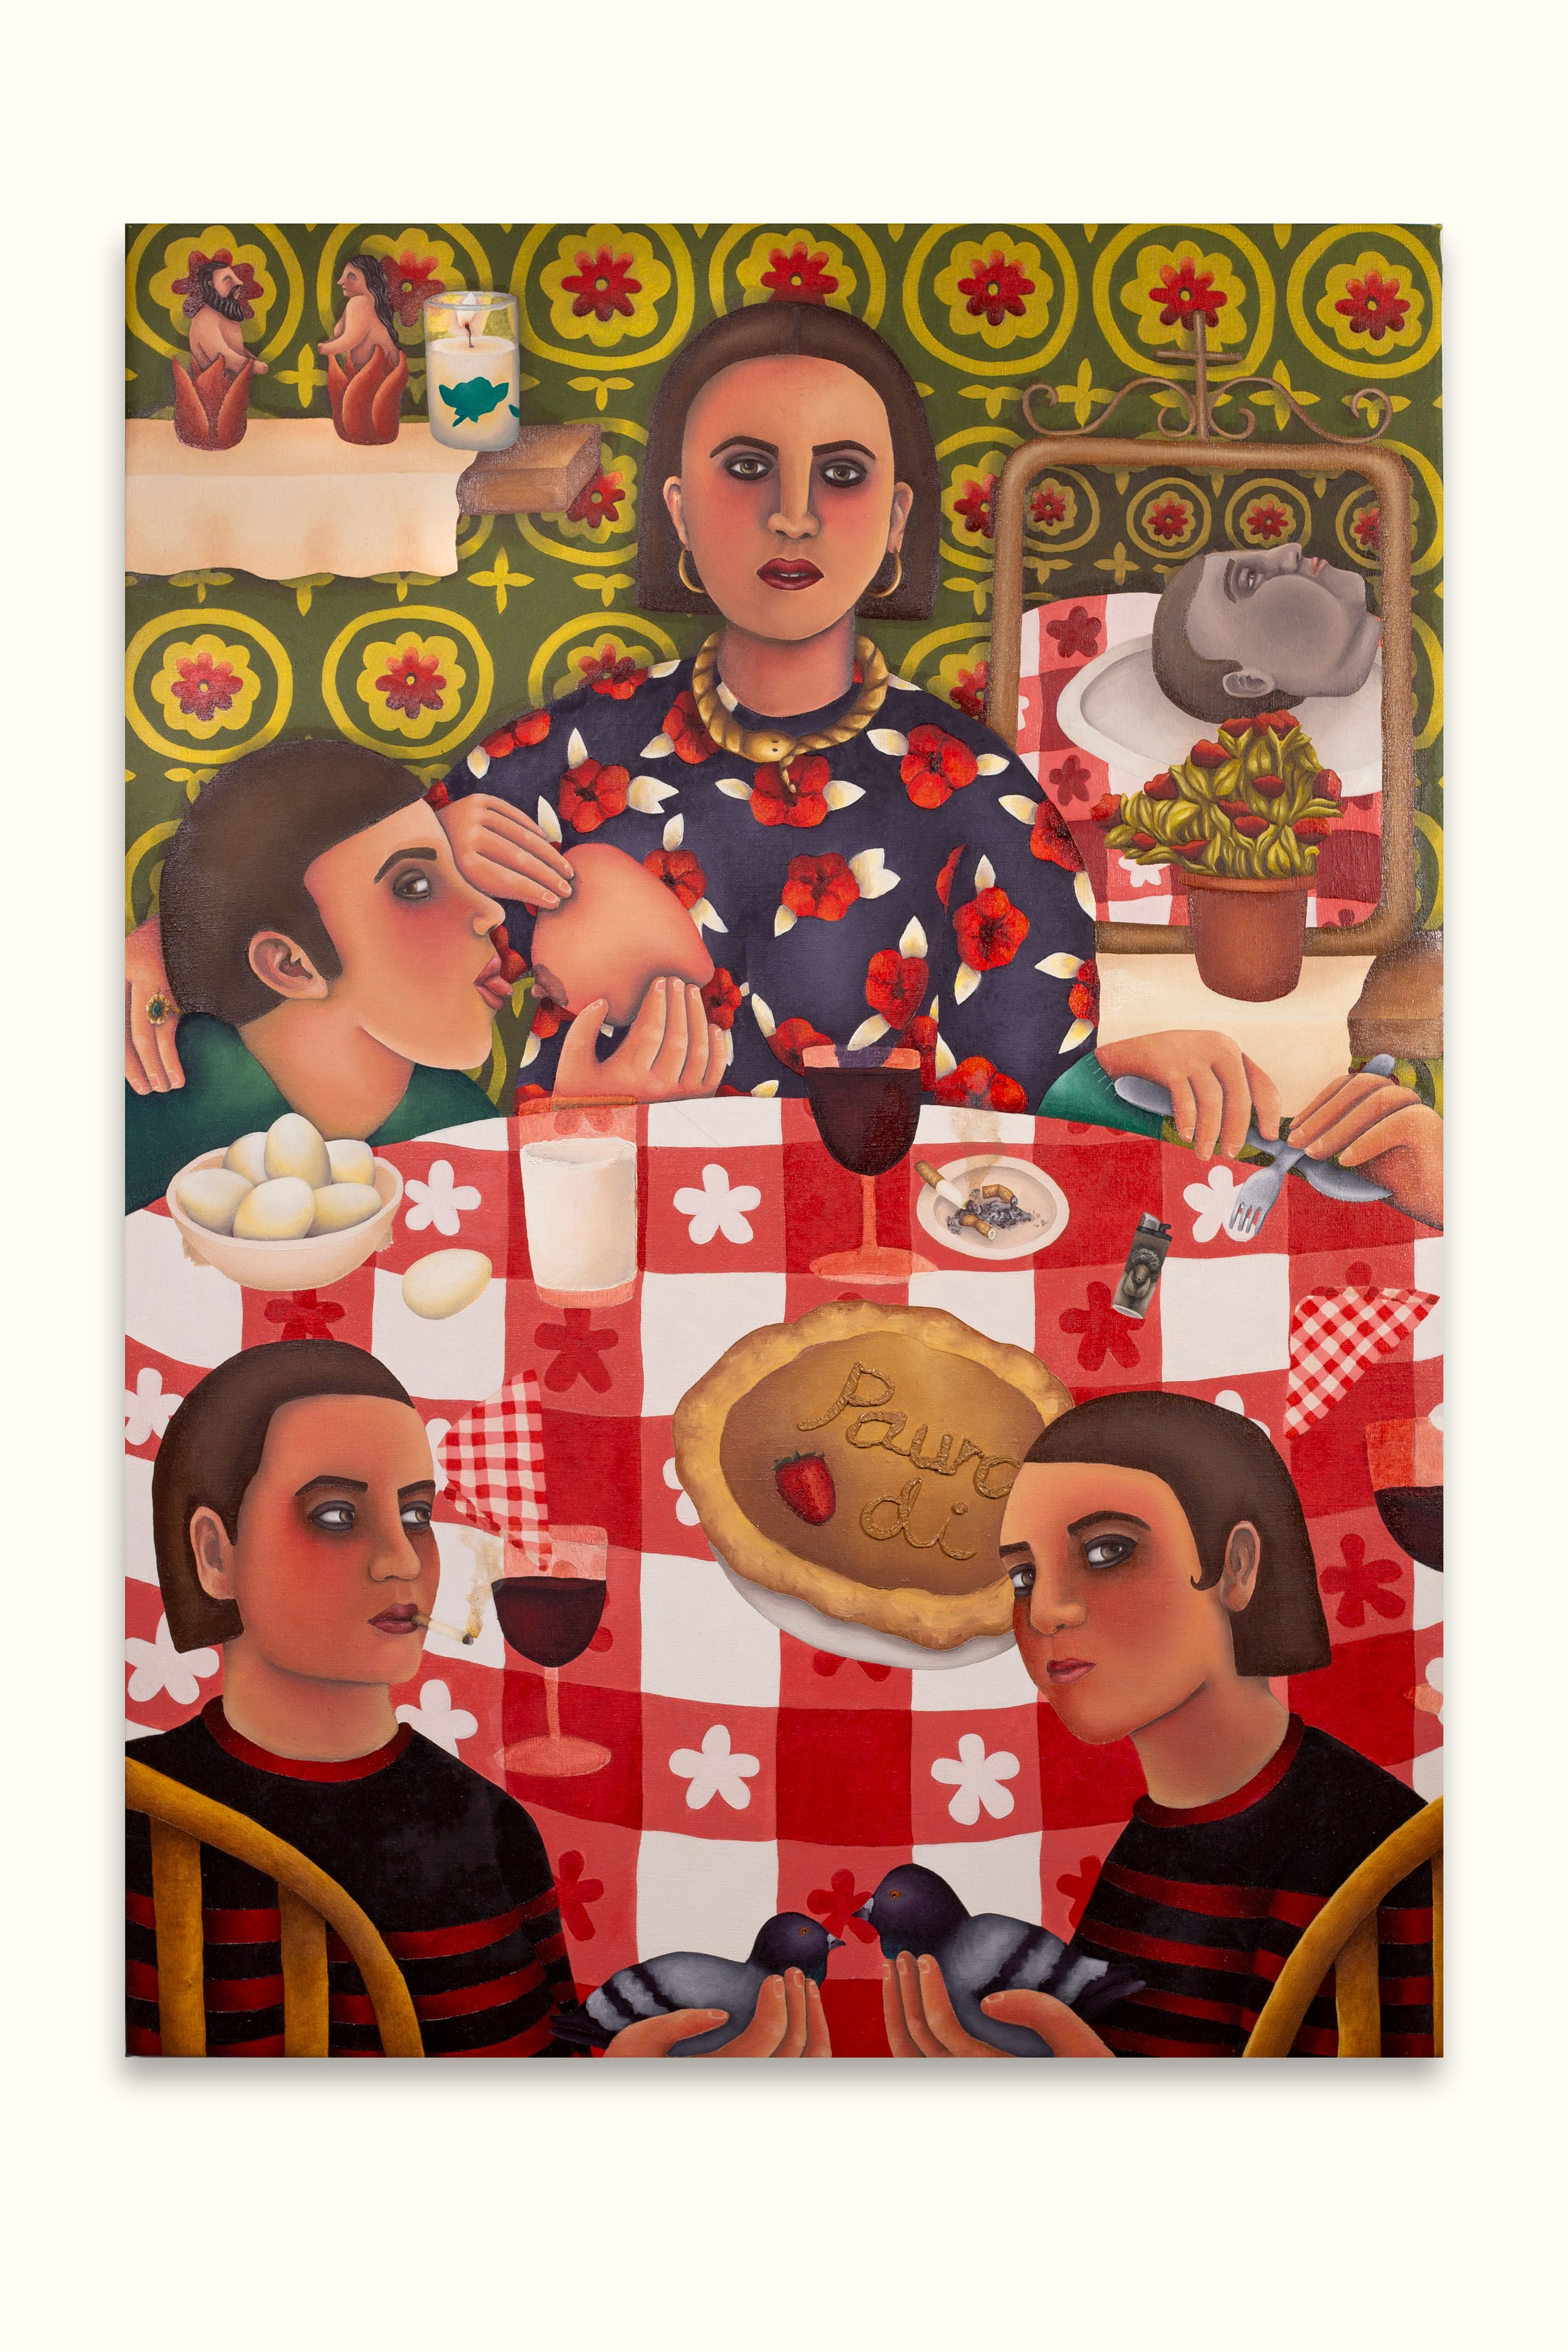   Delia sin miedo , 38” x 26”, oil on canvas, 2018     